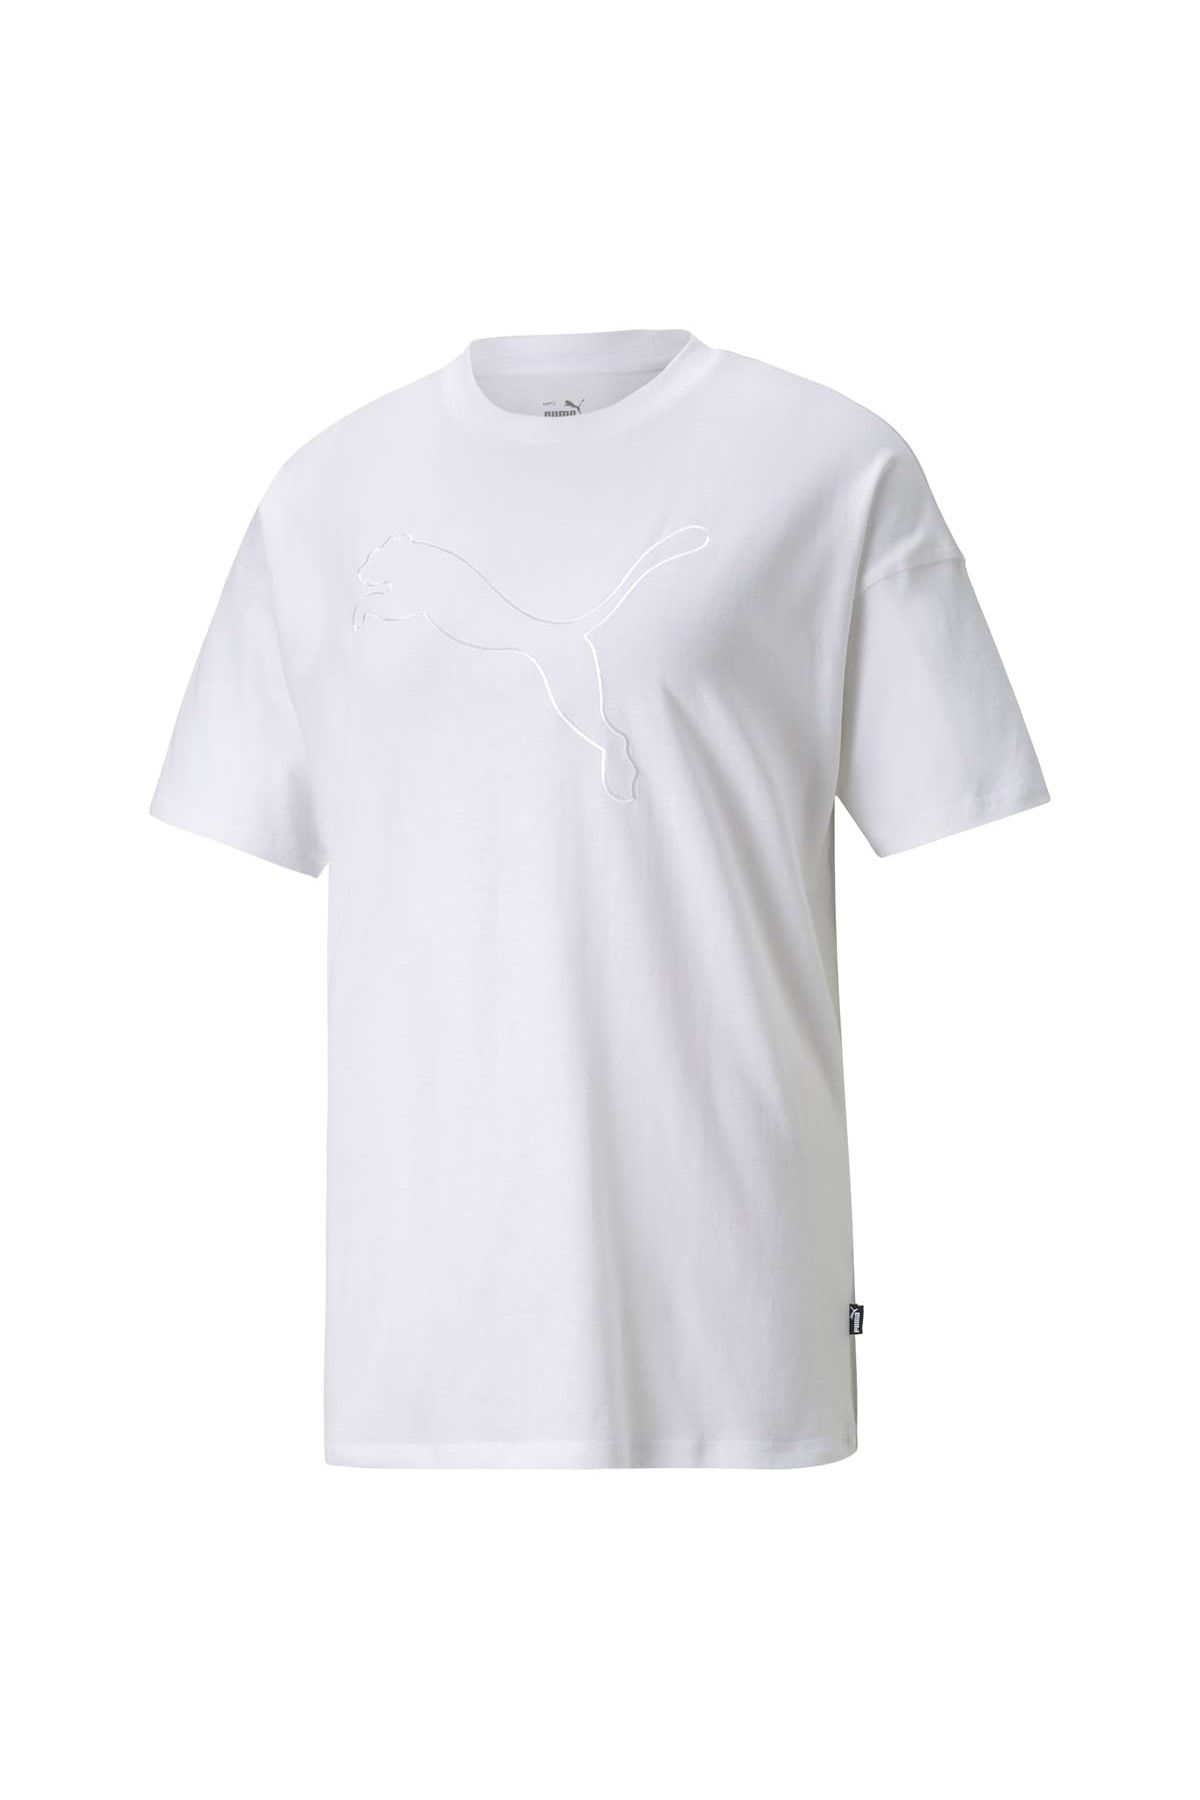 Puma Damen T-Shirt - uni Tee, Trendyol Kurzarm, HER Logo, Rundhals, 